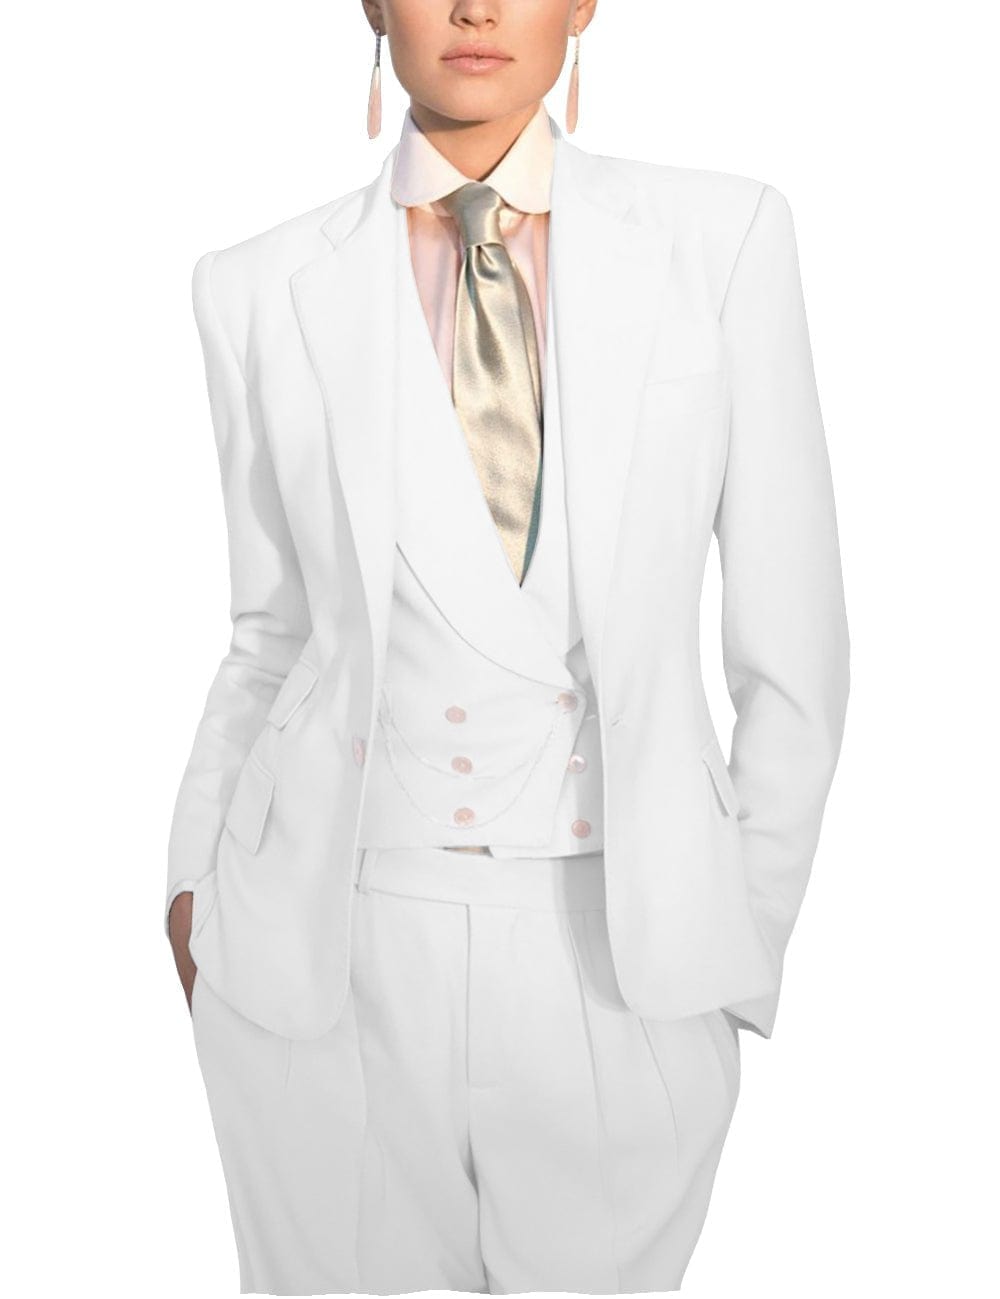 solovedress Women's Slim 3 Piece Suit Solid Color Notch Lapel Bussiness Suit (Blazer+Pants+Vest)